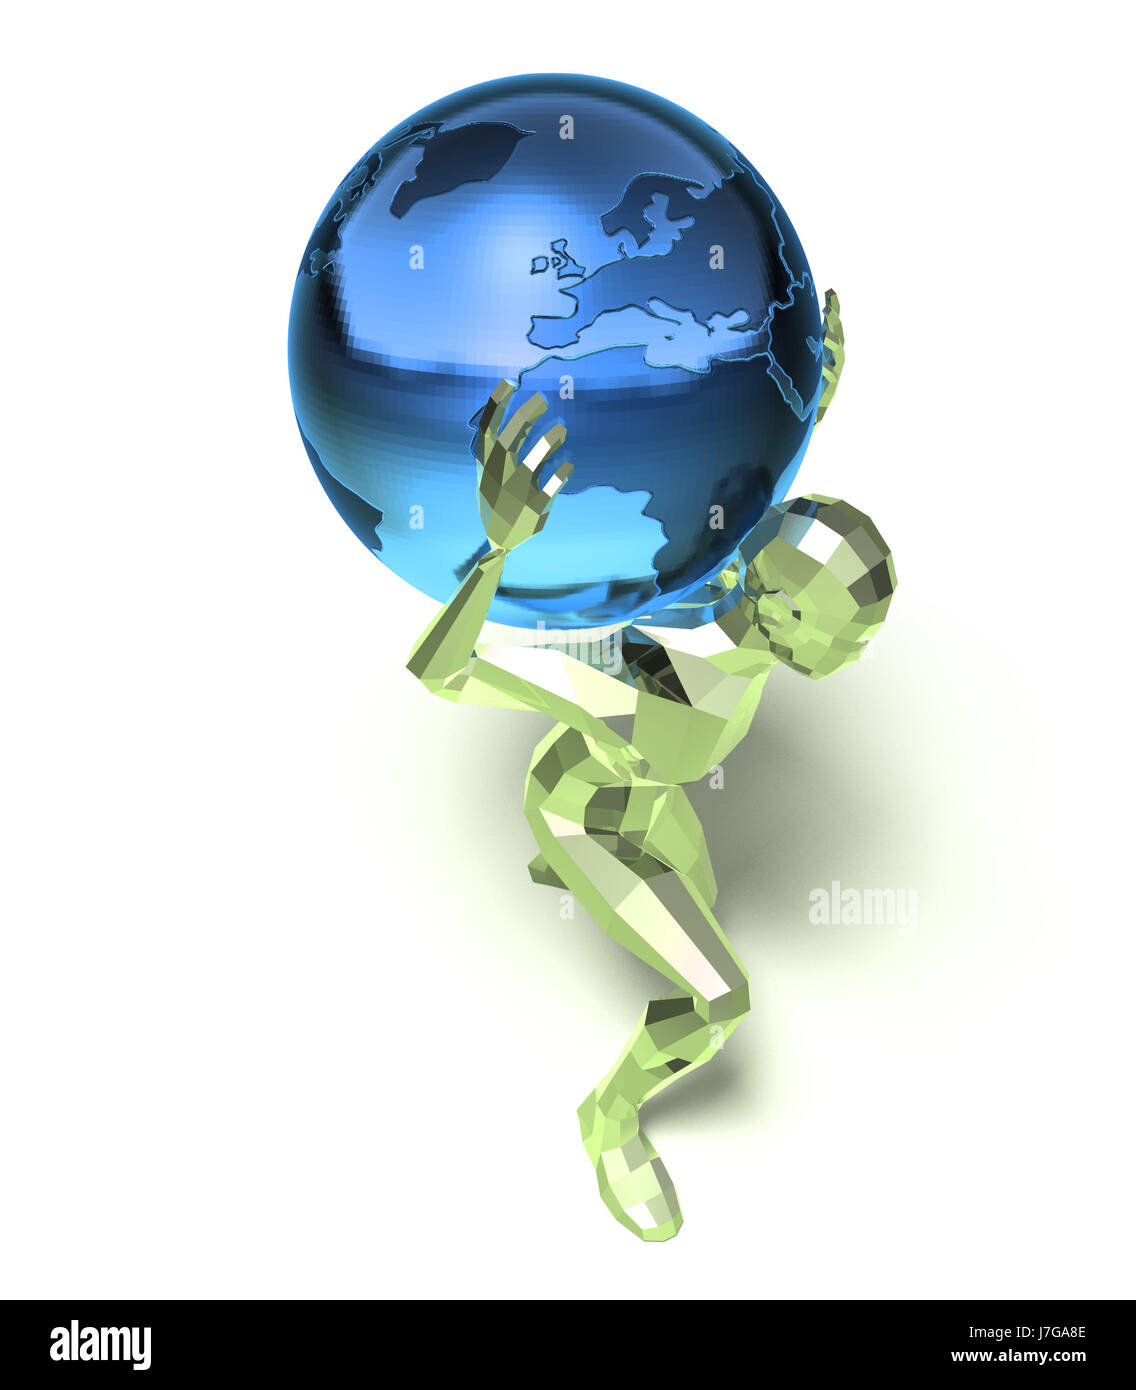 Calice en verre bleu tumbler travel Europe Amérique illustration abstract Banque D'Images